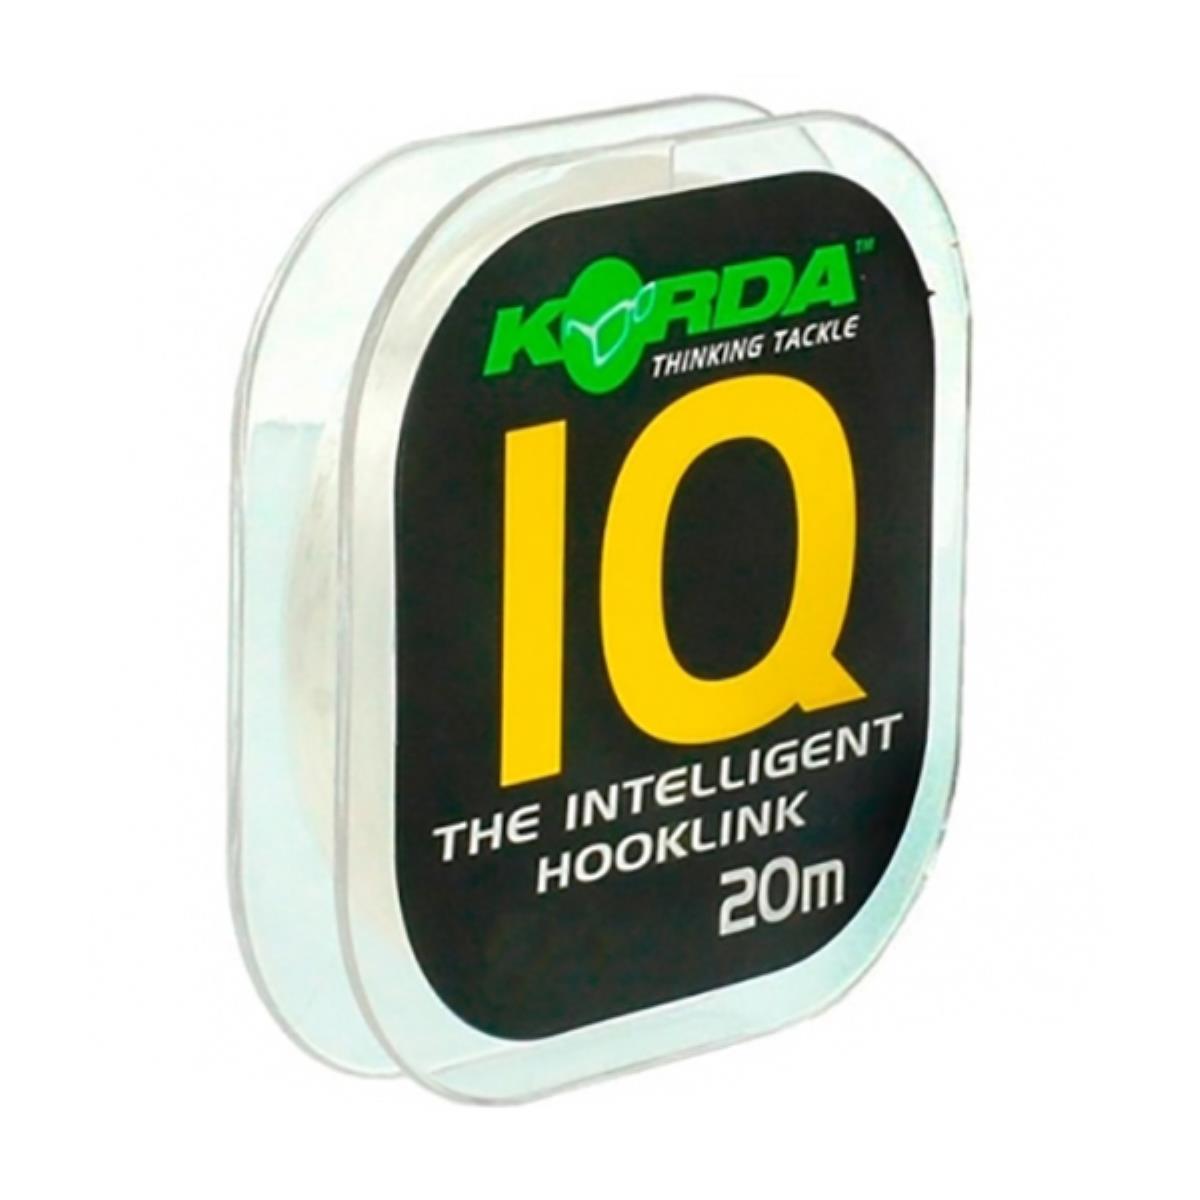 Поводковый материал IQ The Intelligent Hooklink 10 lb Korda intelligent arlight релейный модуль knx 724 sw10 din bus 24х10a arlight